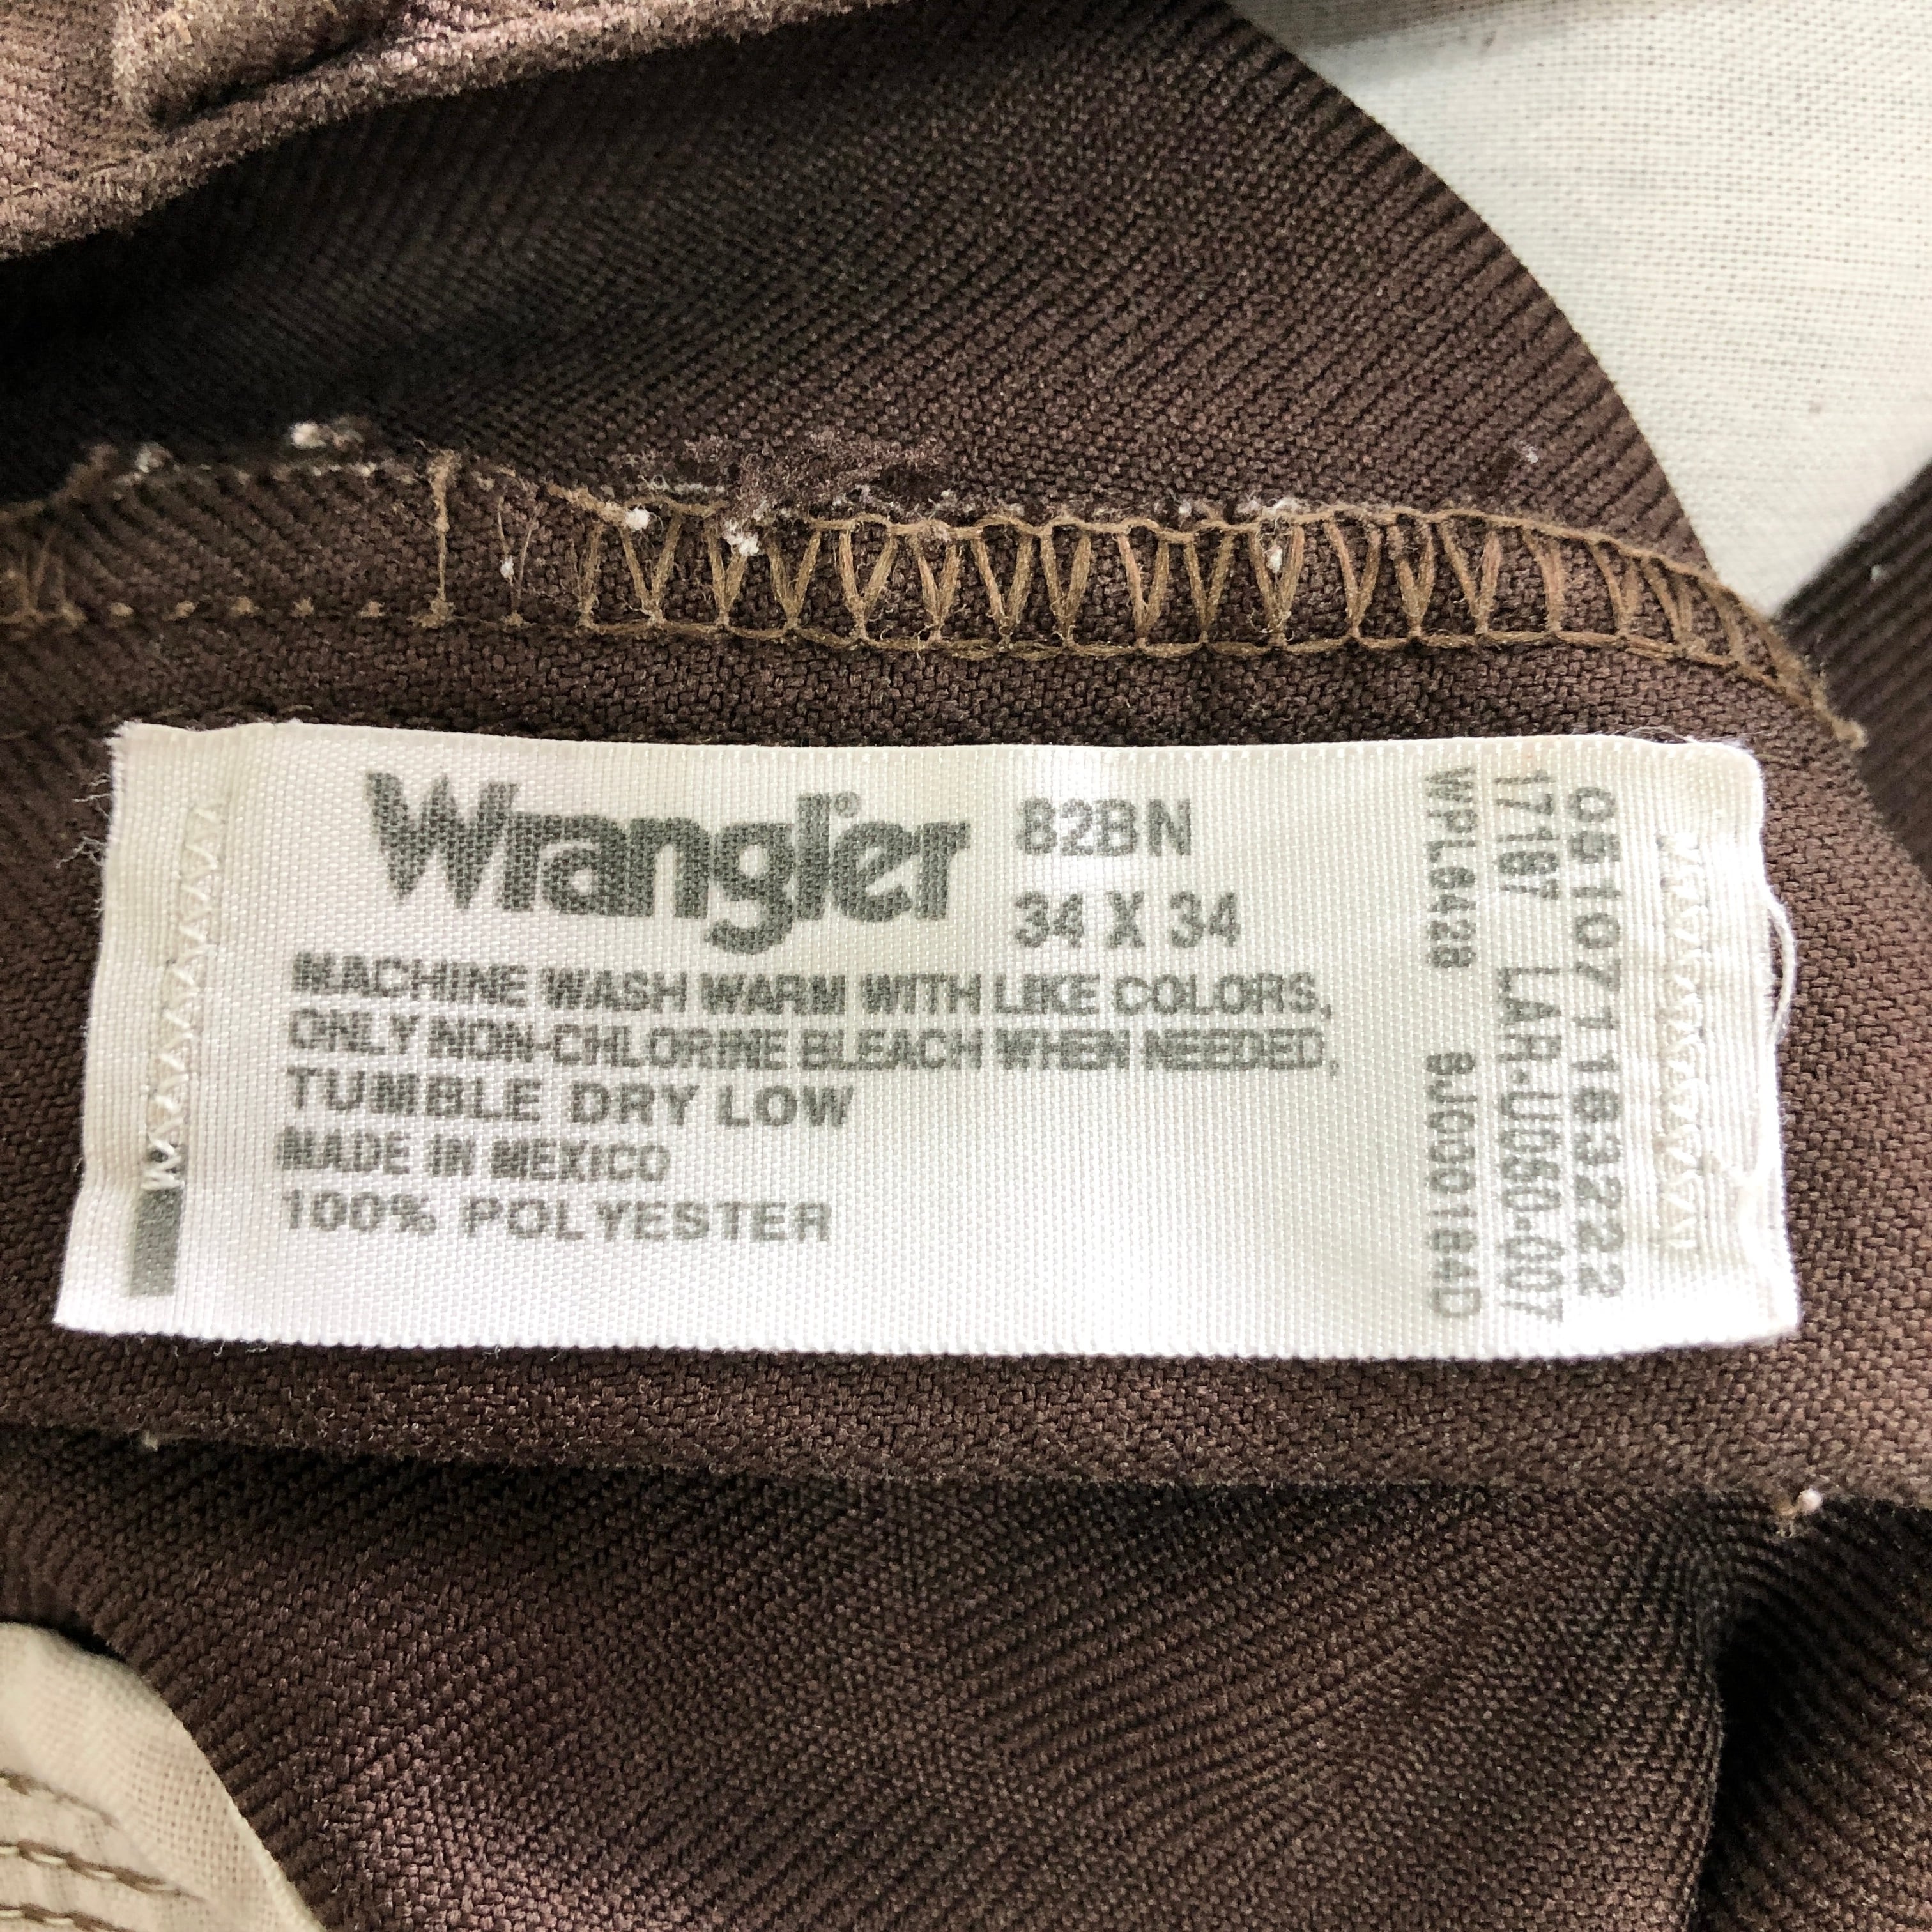 Wrangler ラングラー 82BN